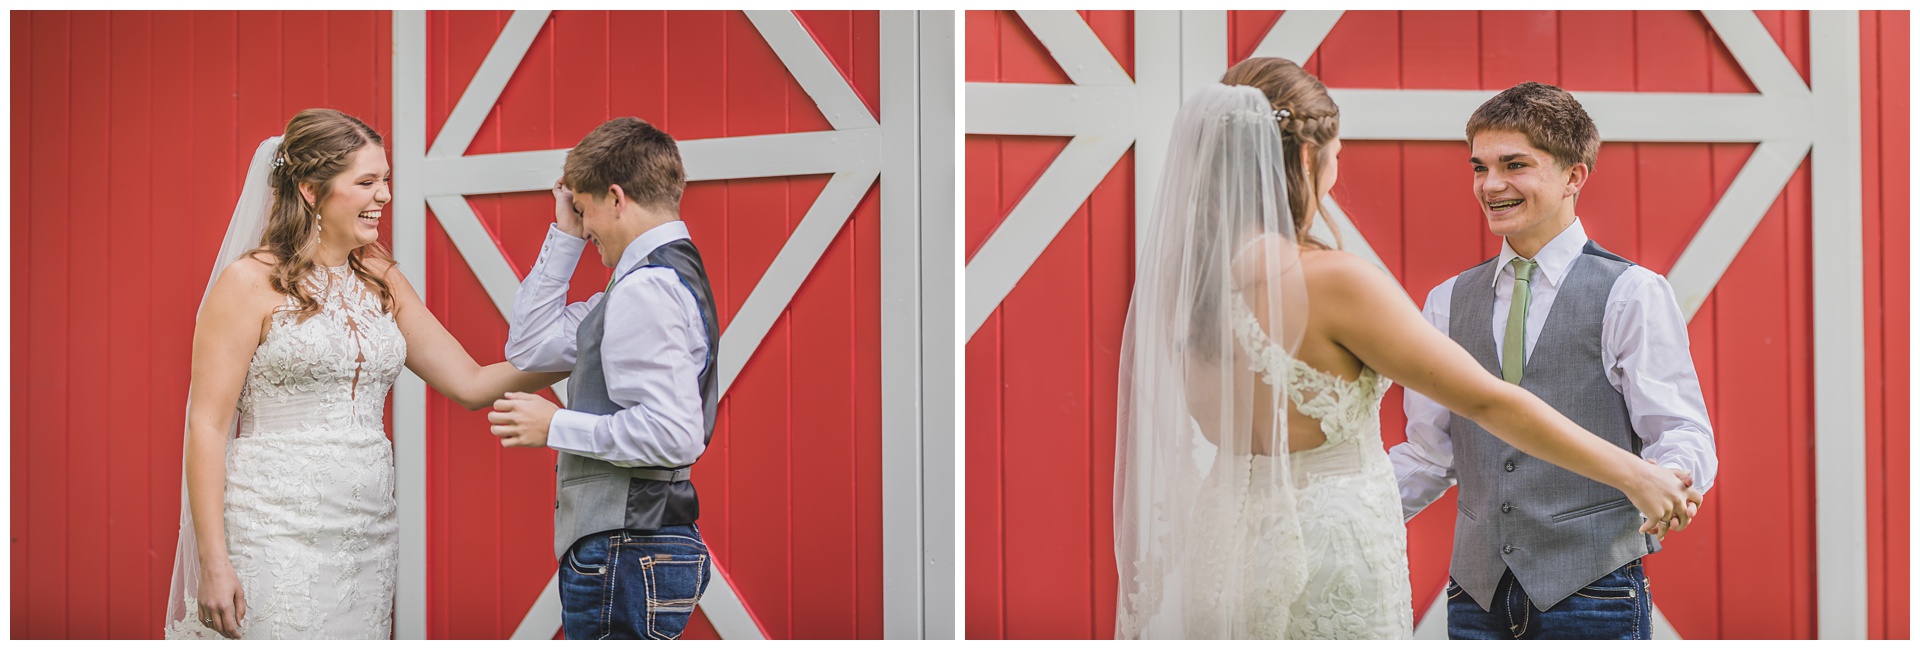 Wedding photography at Emma Creek Barn in Hesston, Kansas, by Kansas City wedding photographers Wisdom-Watson Weddings.